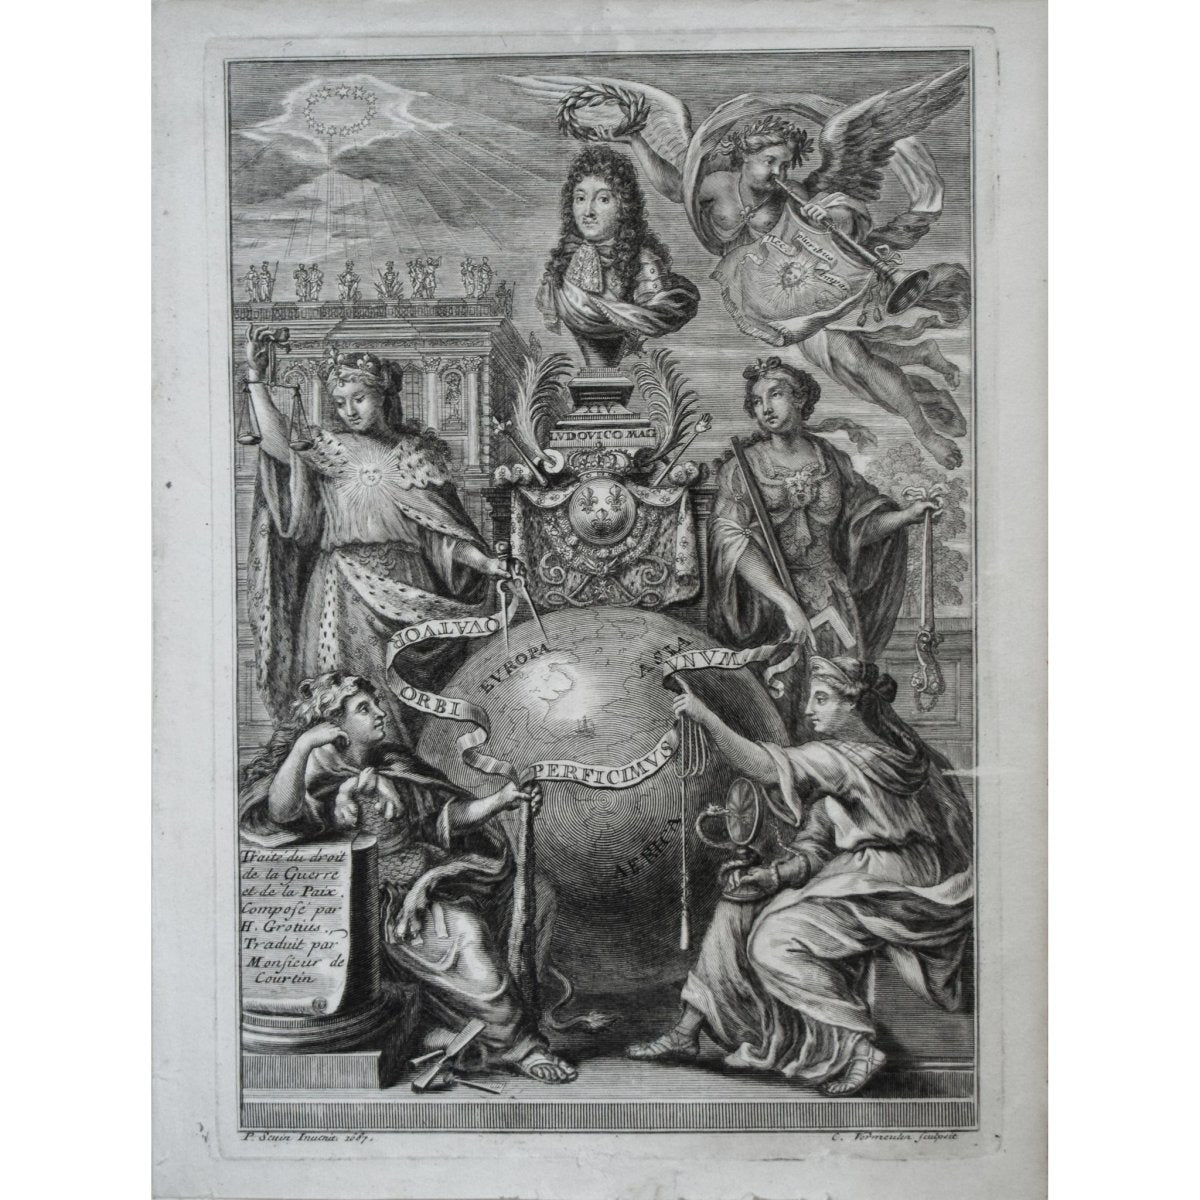 Cornelis Vermeulen (1644-1708)